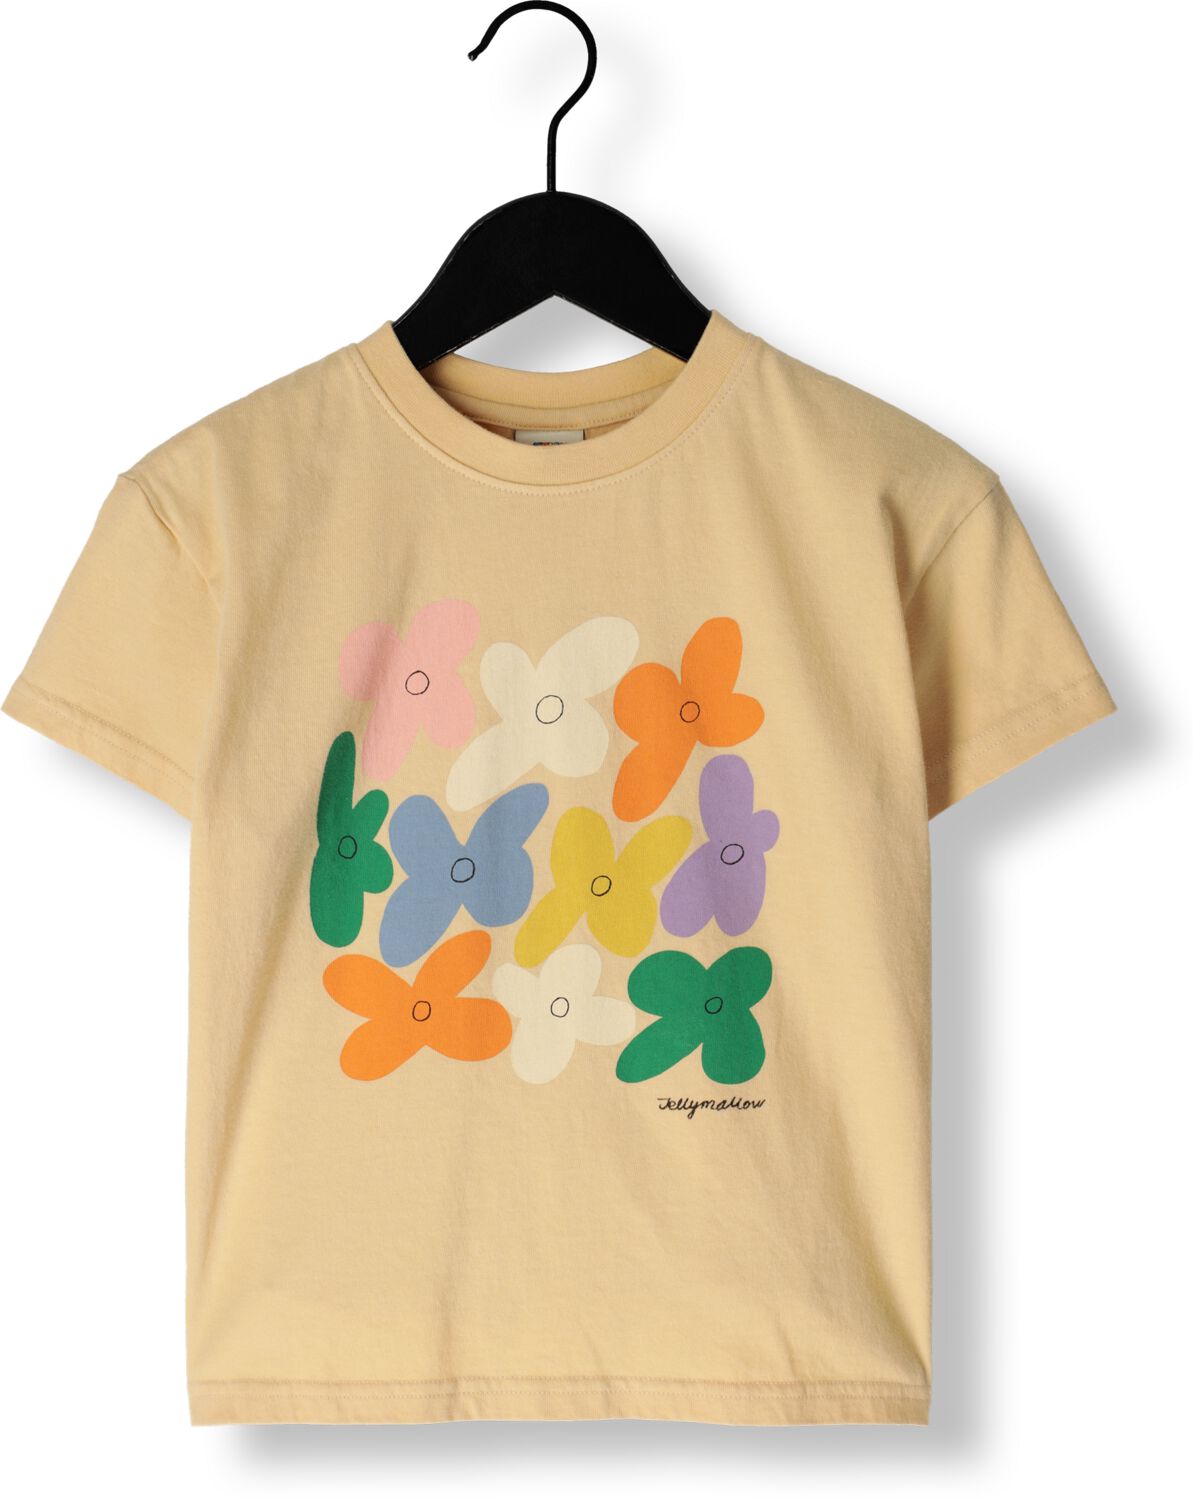 Jelly Mallow Meisjes Tops & T-shirts Flower T-shirt Geel-11Y